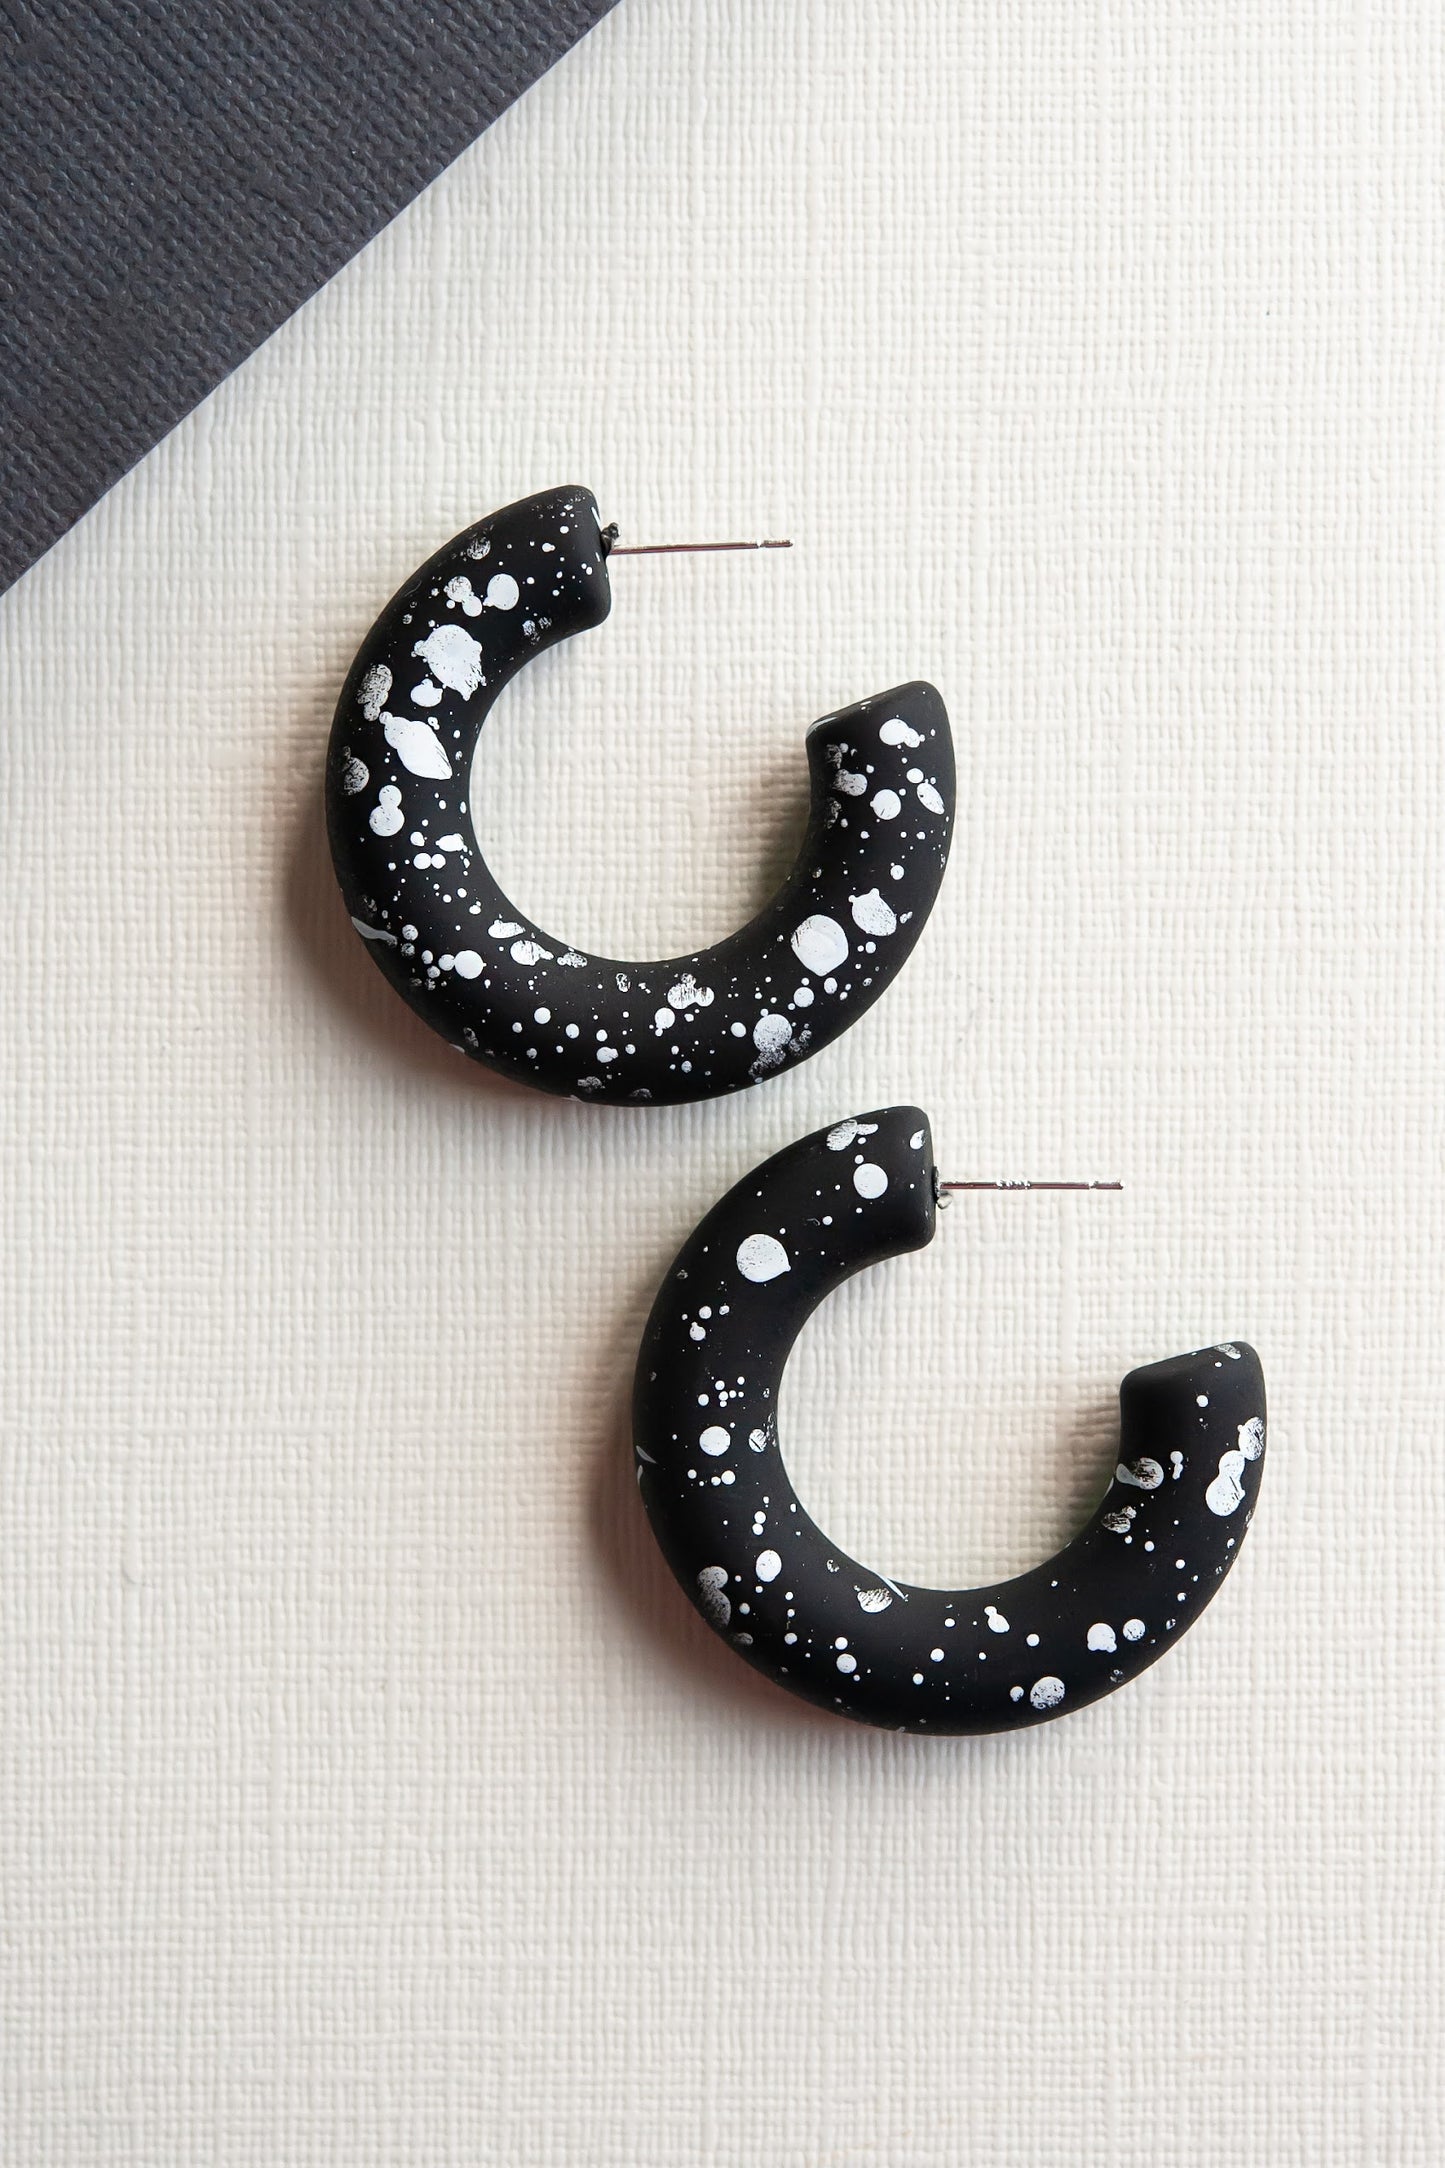 Clay Black Speckle Hoop Earrings | Splatter Painted Clay Hoops | Modern Chic Hoop Earrings